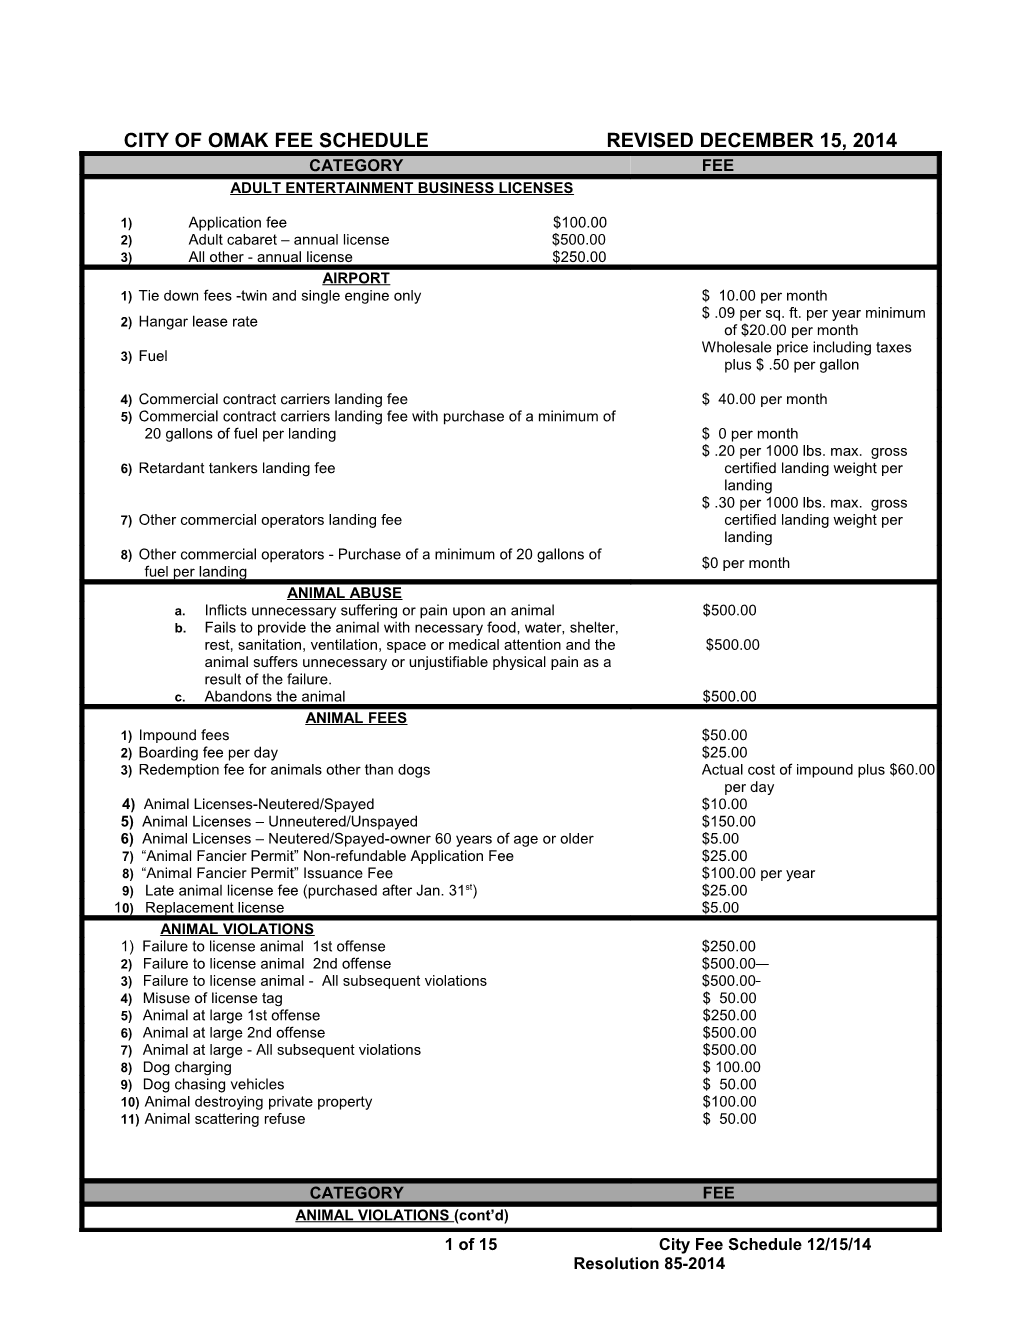 City of Omak Fee Schedule Revised December 15, 2014